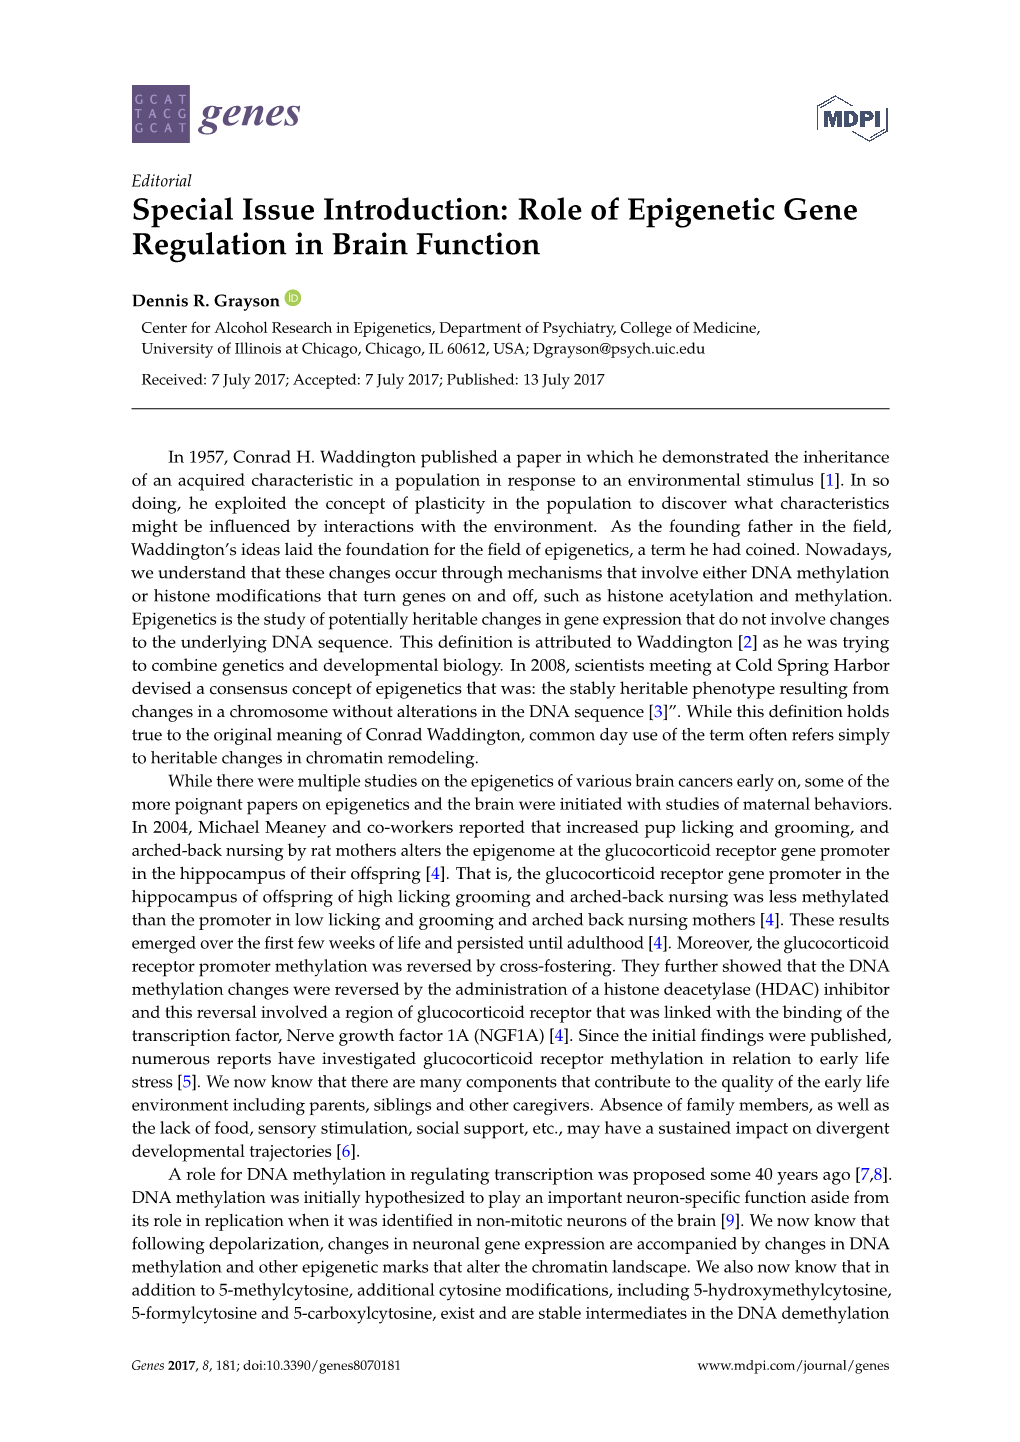 Role of Epigenetic Gene Regulation in Brain Function